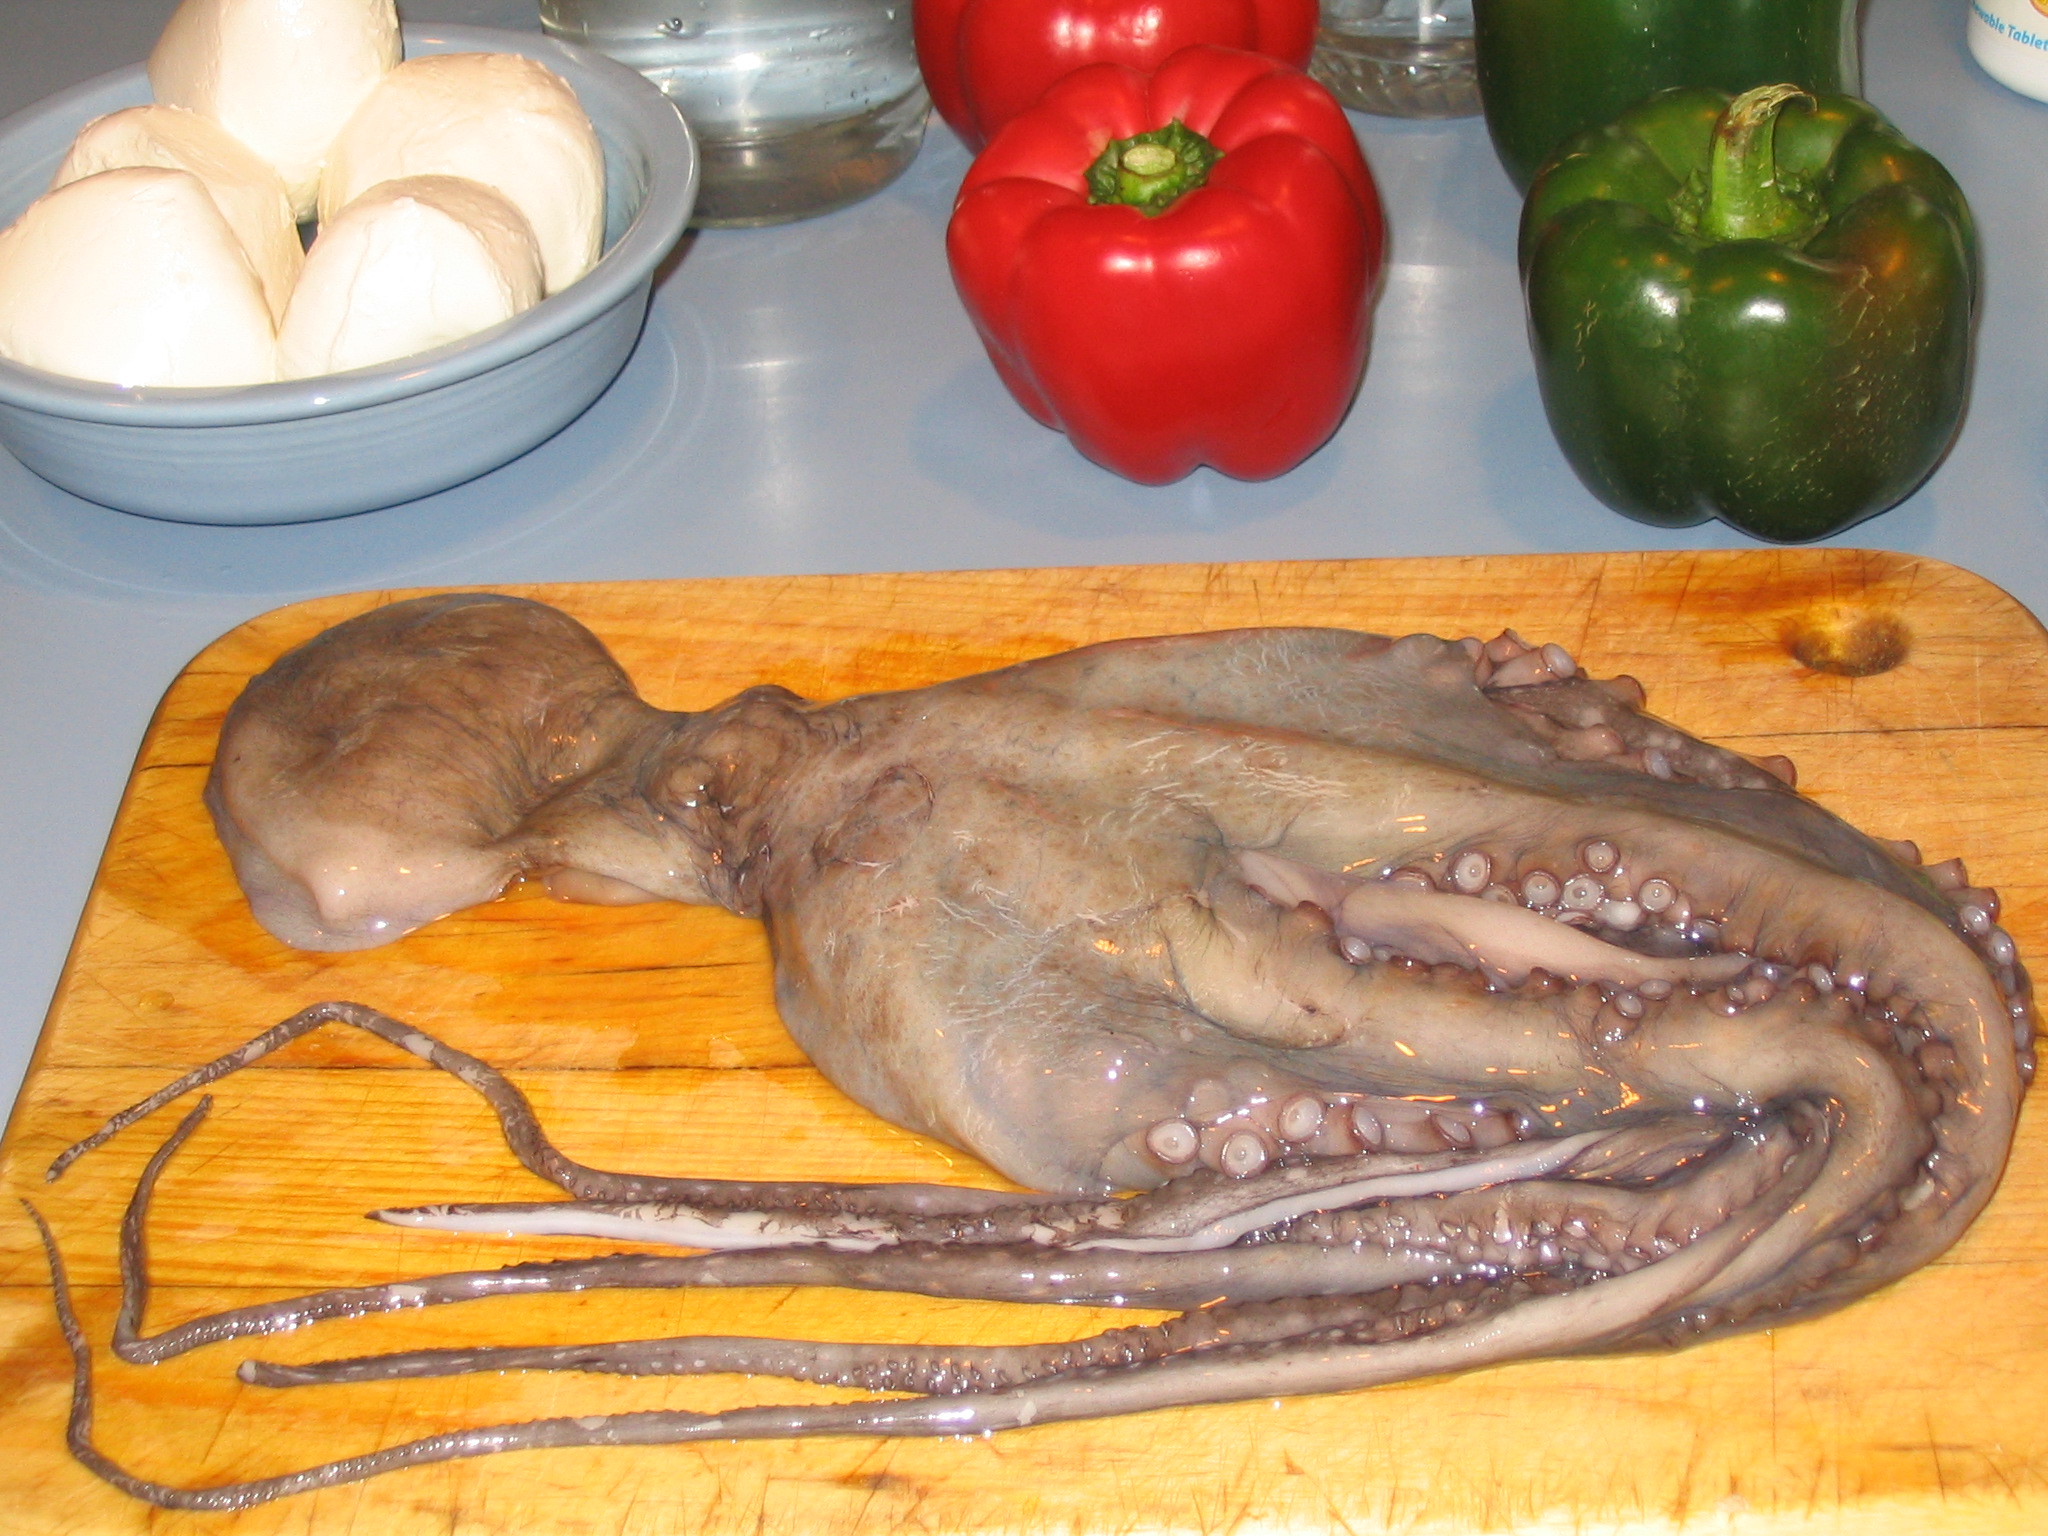 Octopus uncooked